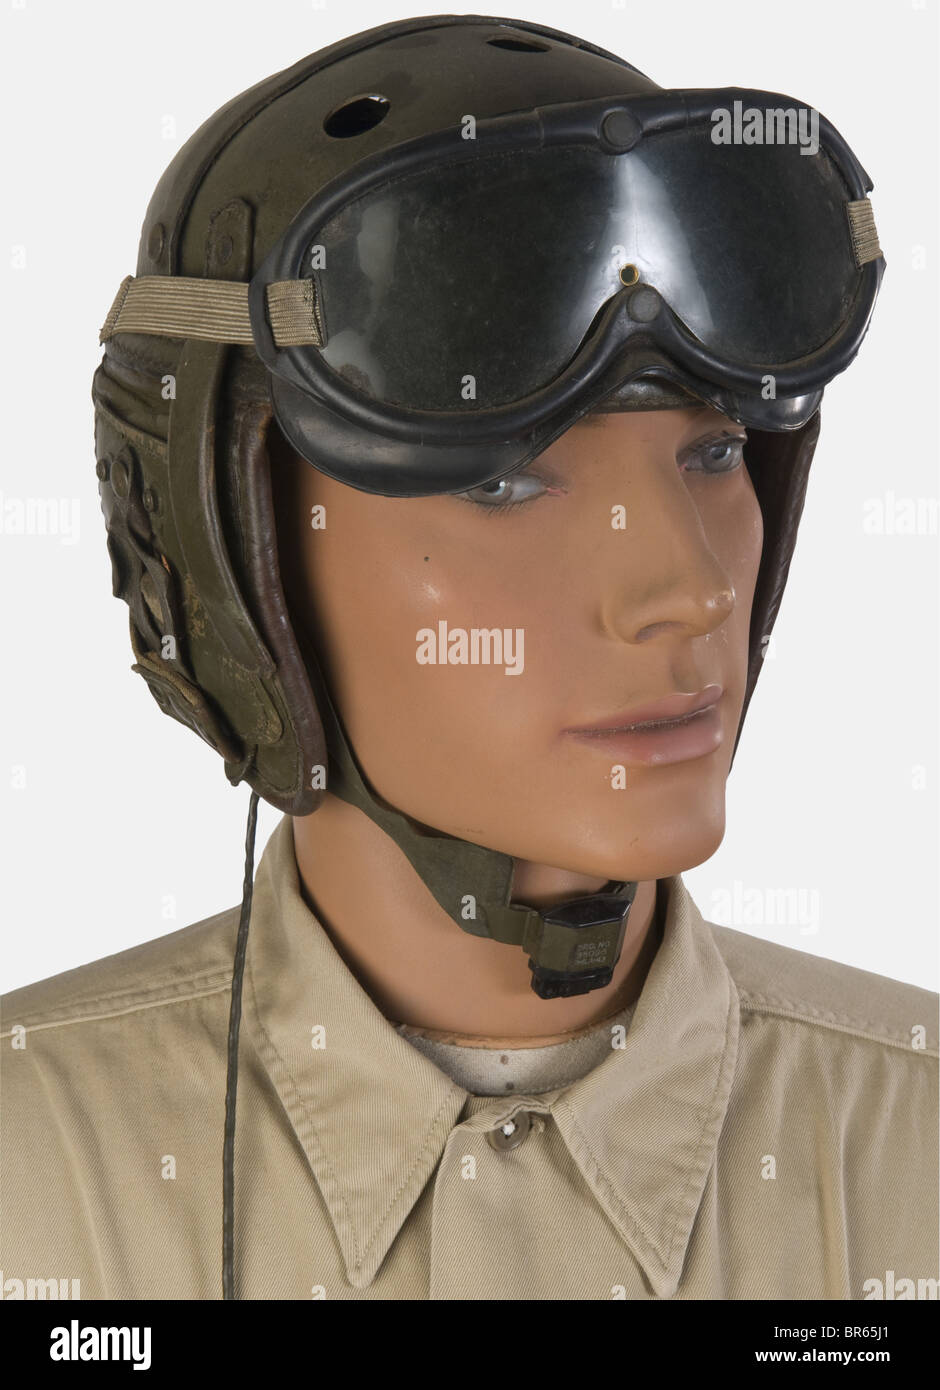 Etats-Unis, Tankiste de la 3ème Division Blindée US, on mannequin, comprant  un casque de tankiste en fibre vert avec rabats d'orilles, lunettes de  conducteur et laryngophone, une chemise en textile kaki clair